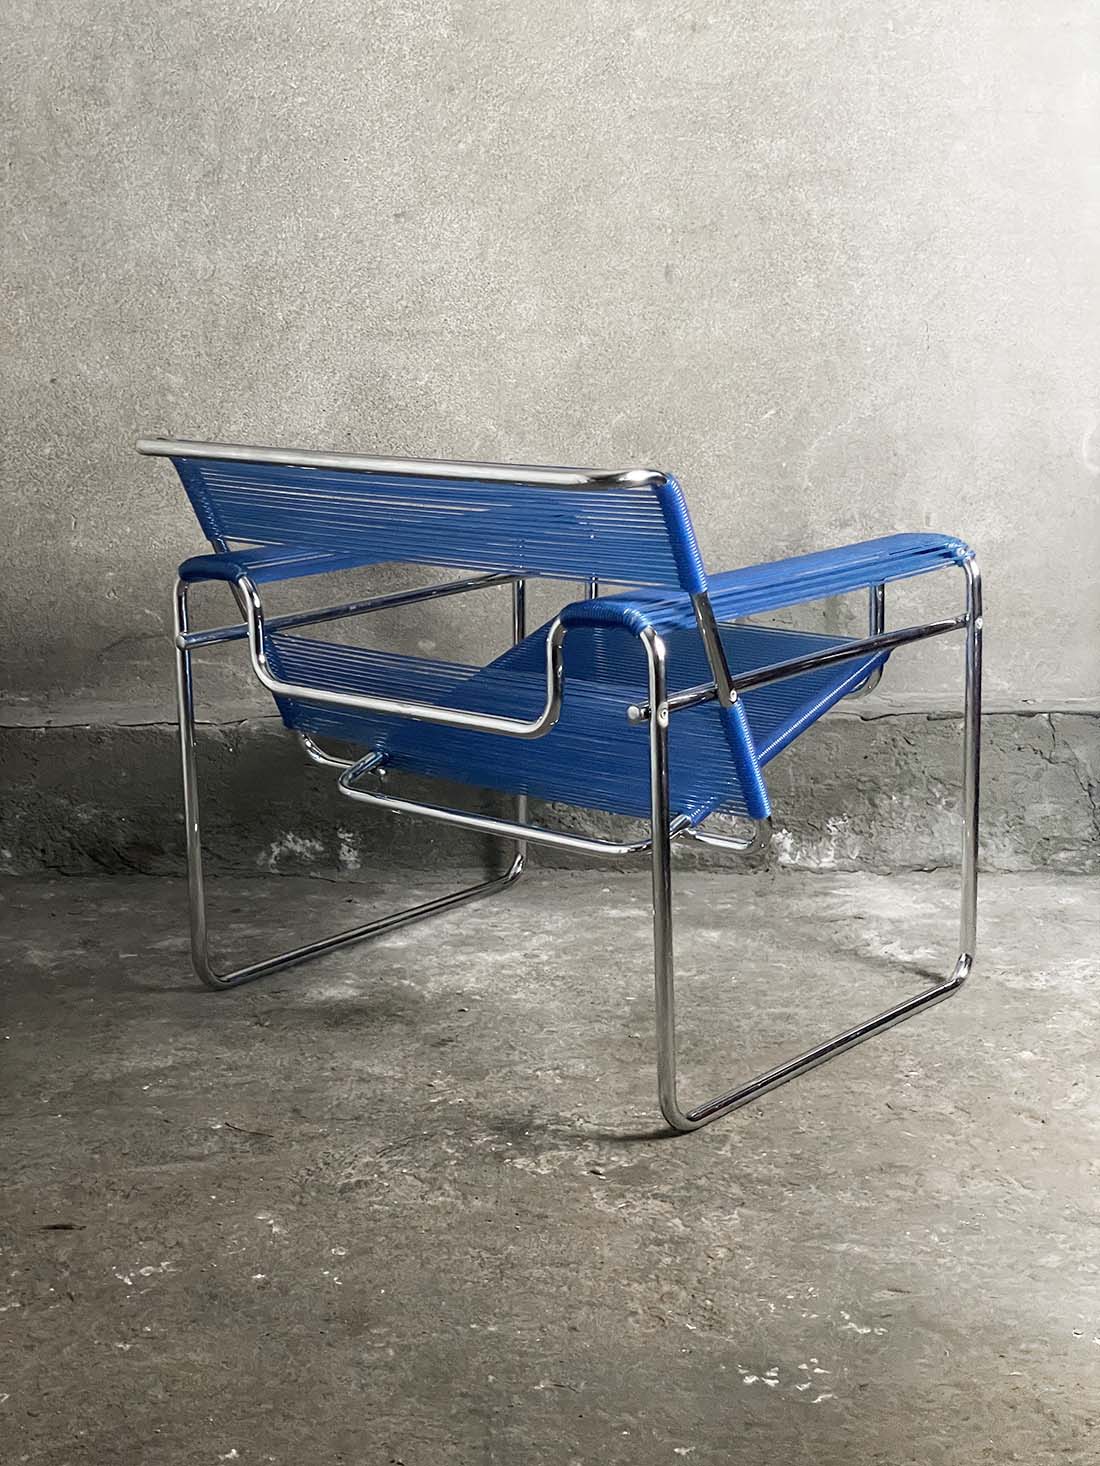 Wasilly breuer fotel spaghetti italian krzeslarz niebieski vintage